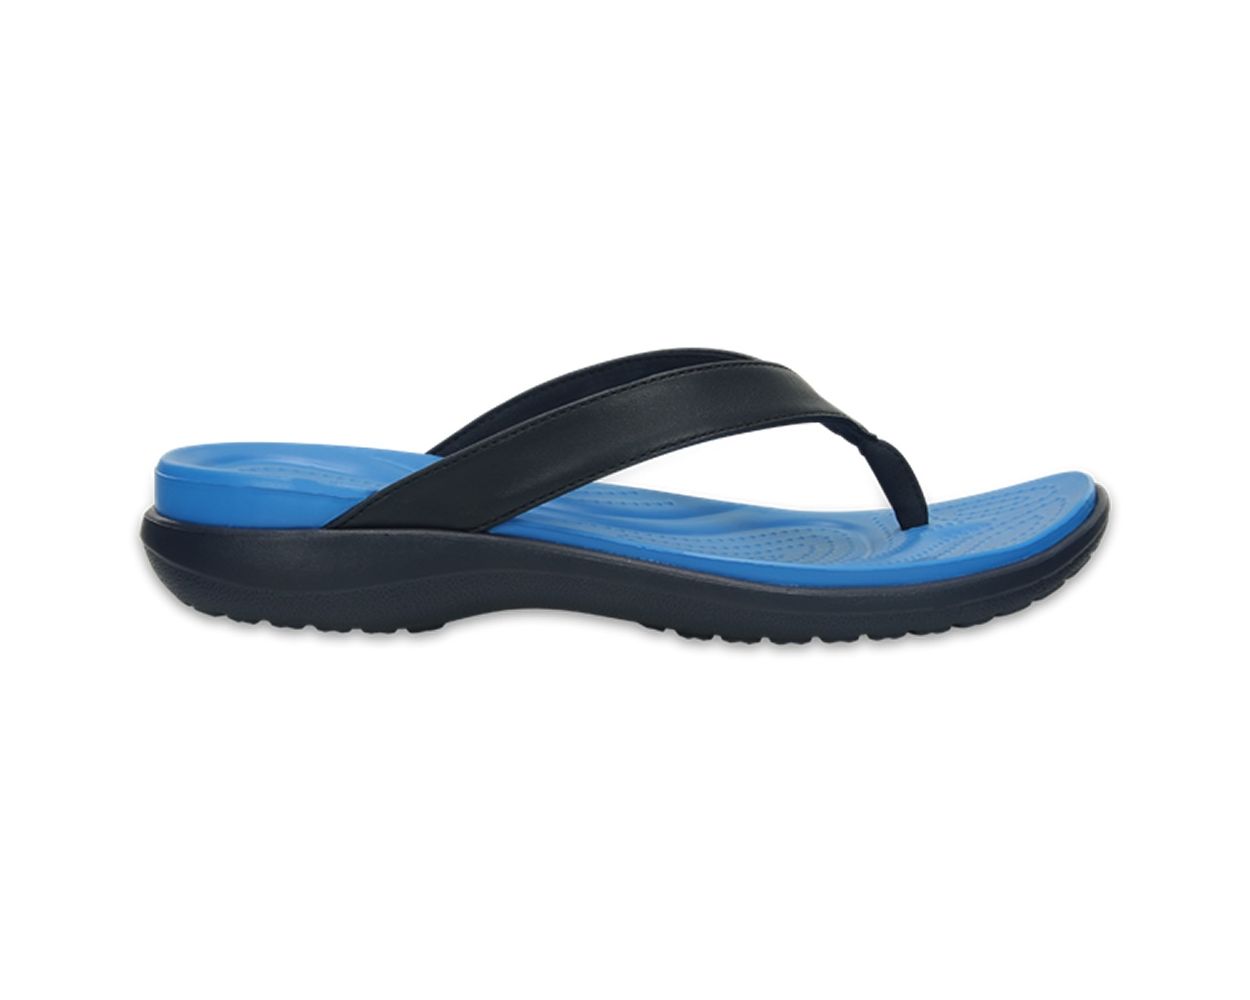 The Crocs Capri V Flip-Flops Are Popular on